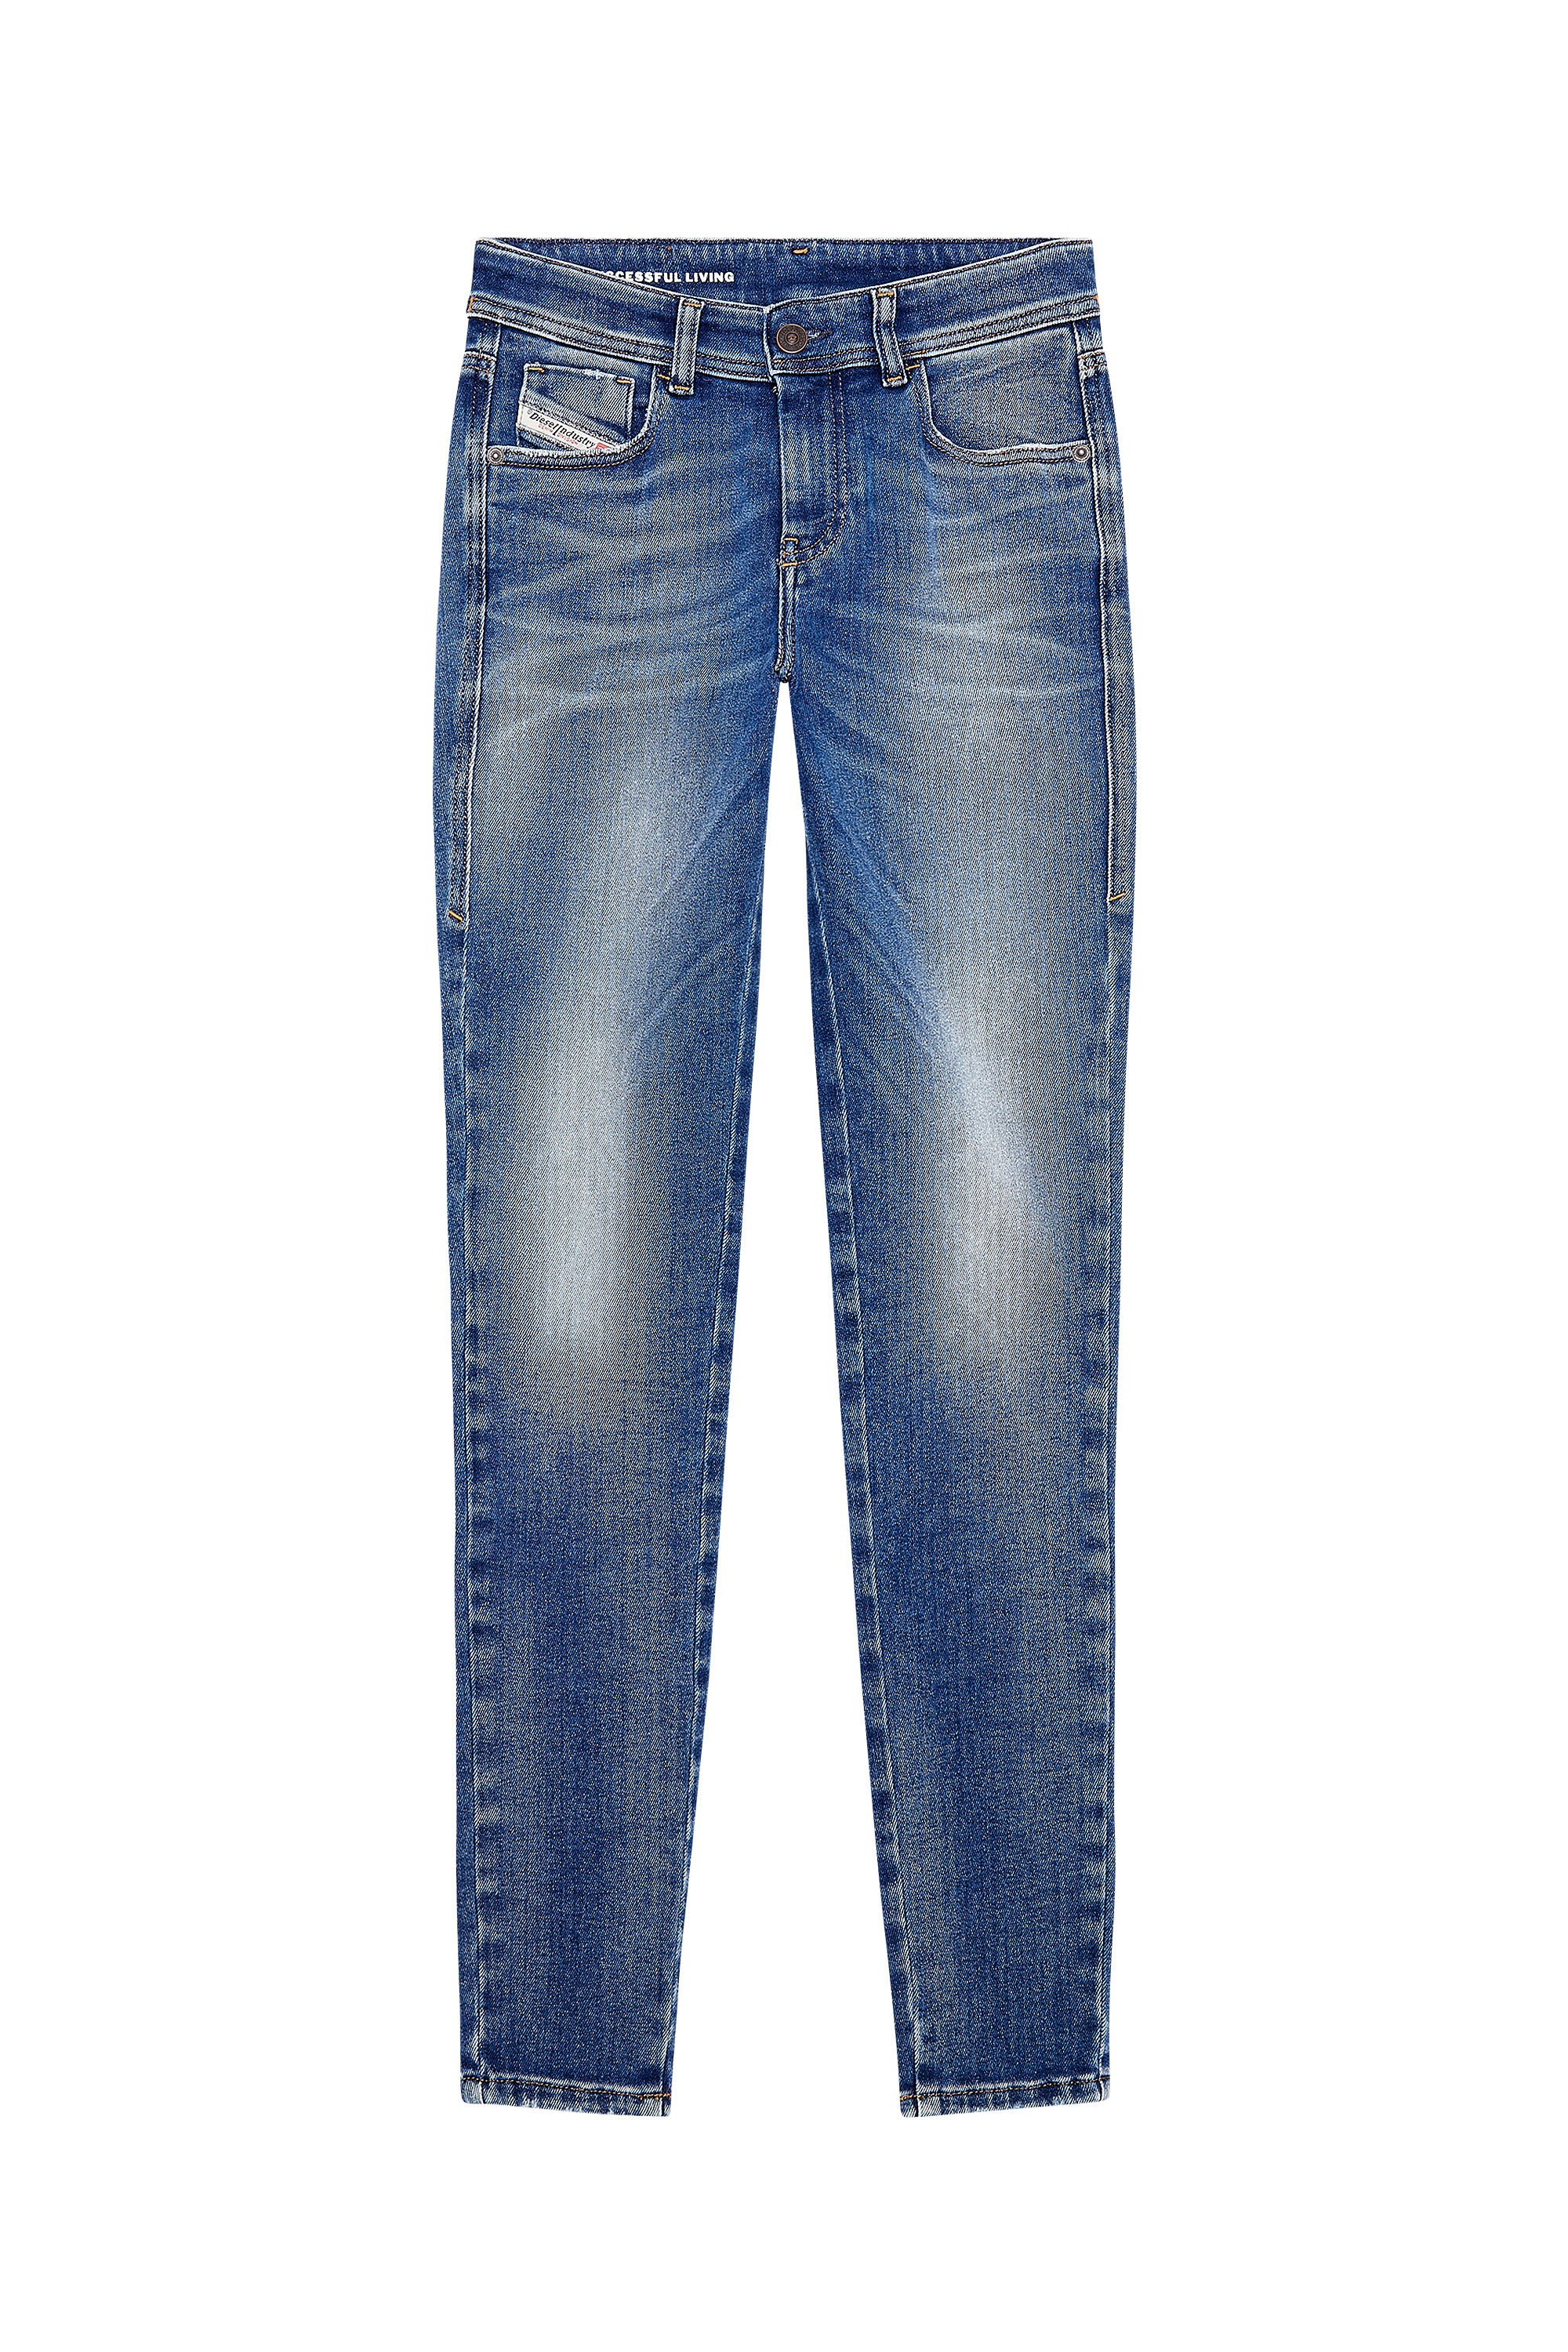 Diesel - Woman Super skinny Jeans 2017 Slandy 09H90, Medium blue - Image 5